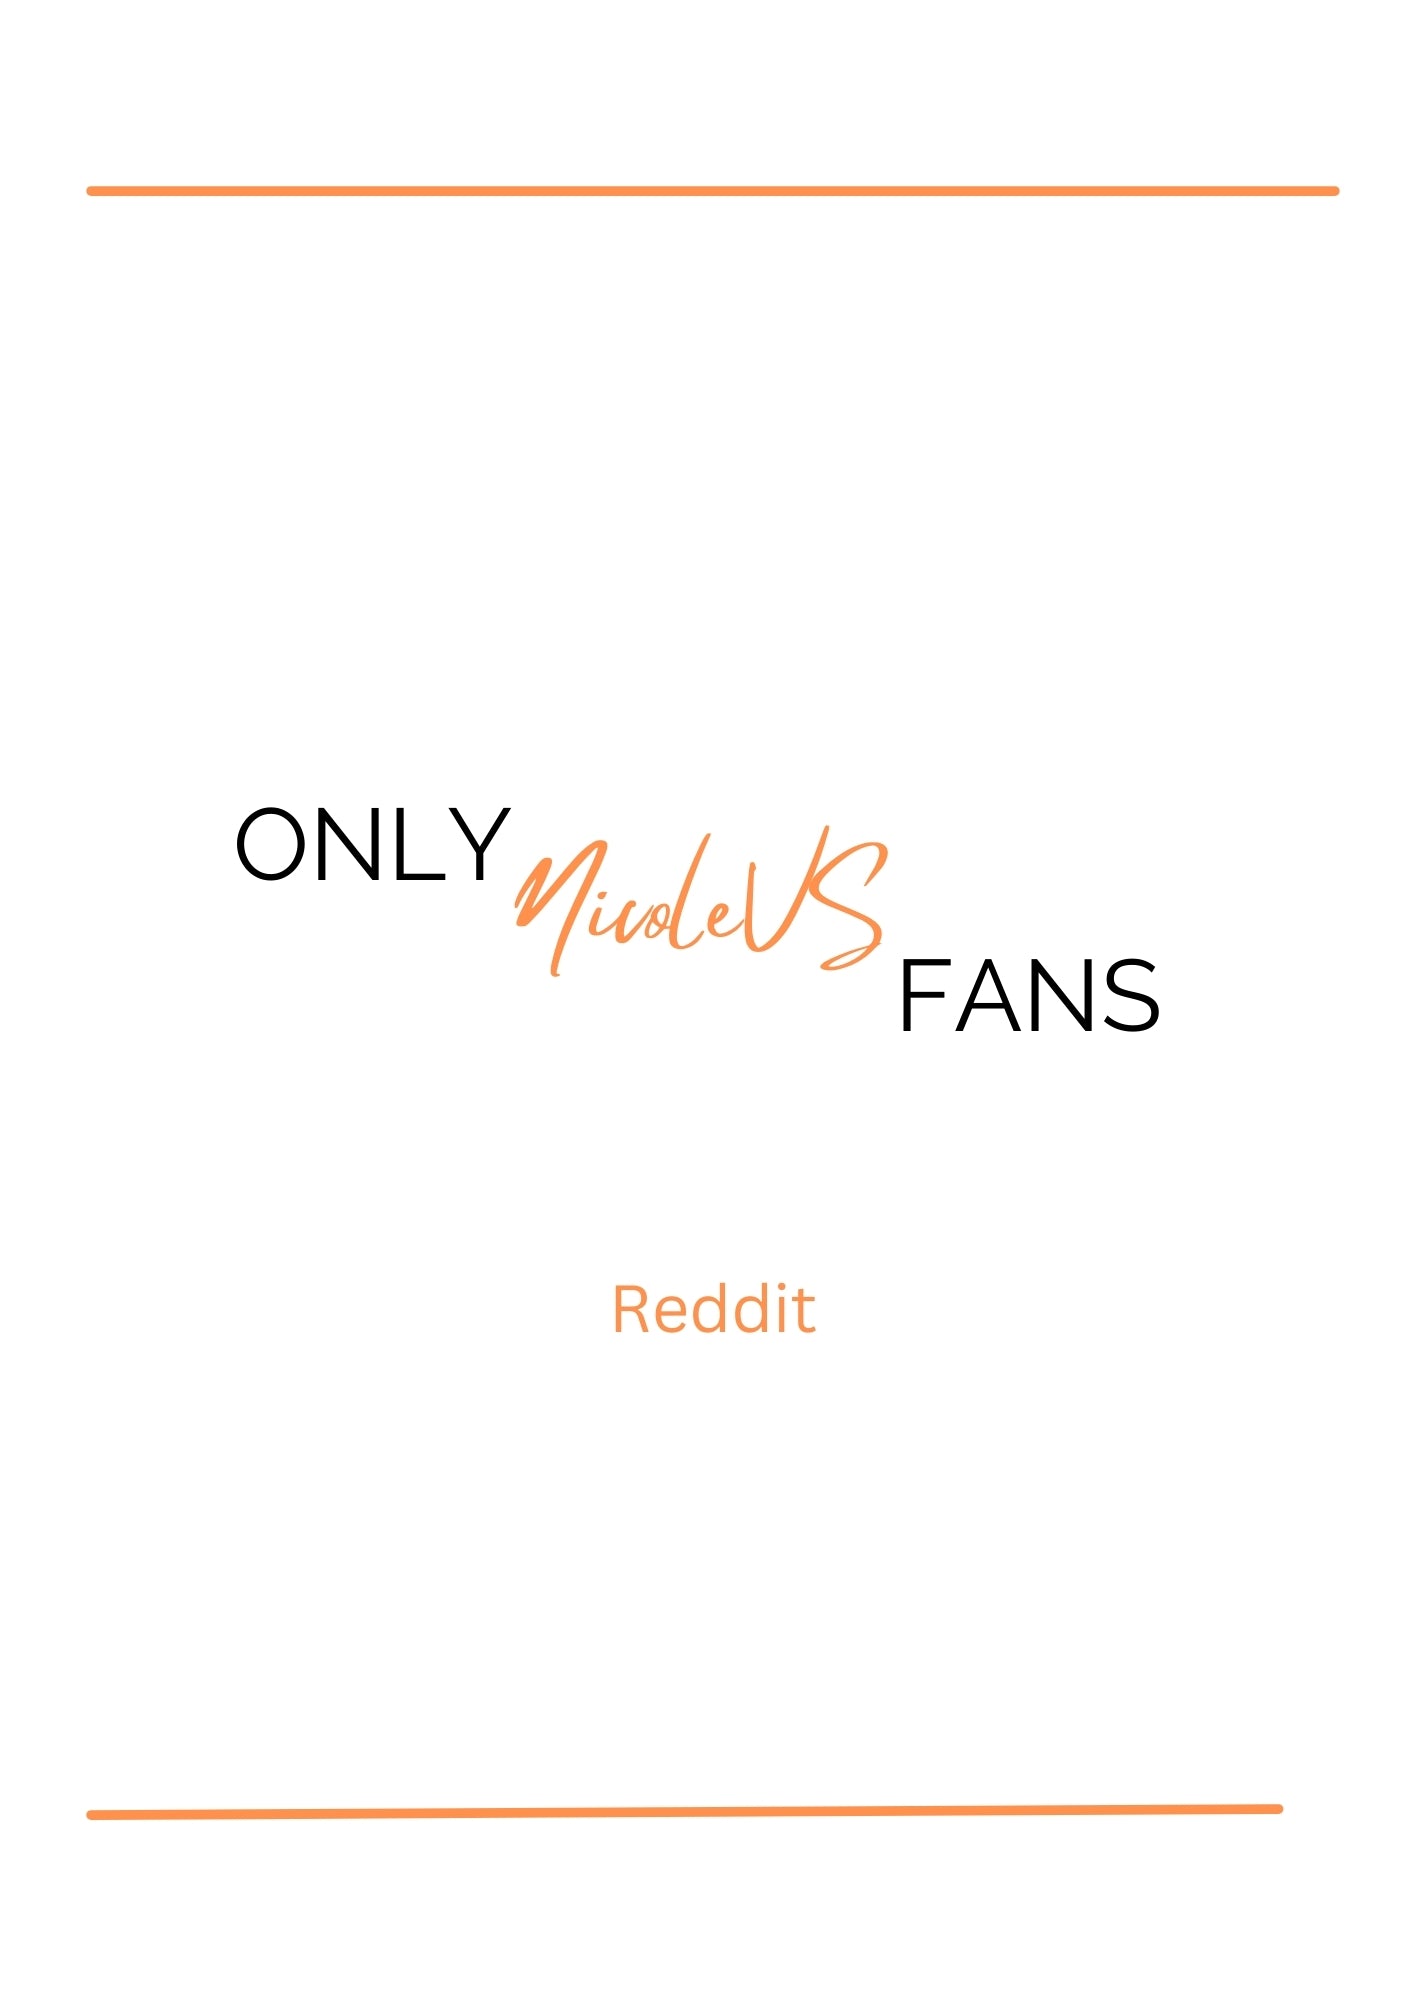 OnlyNVS - Reddit